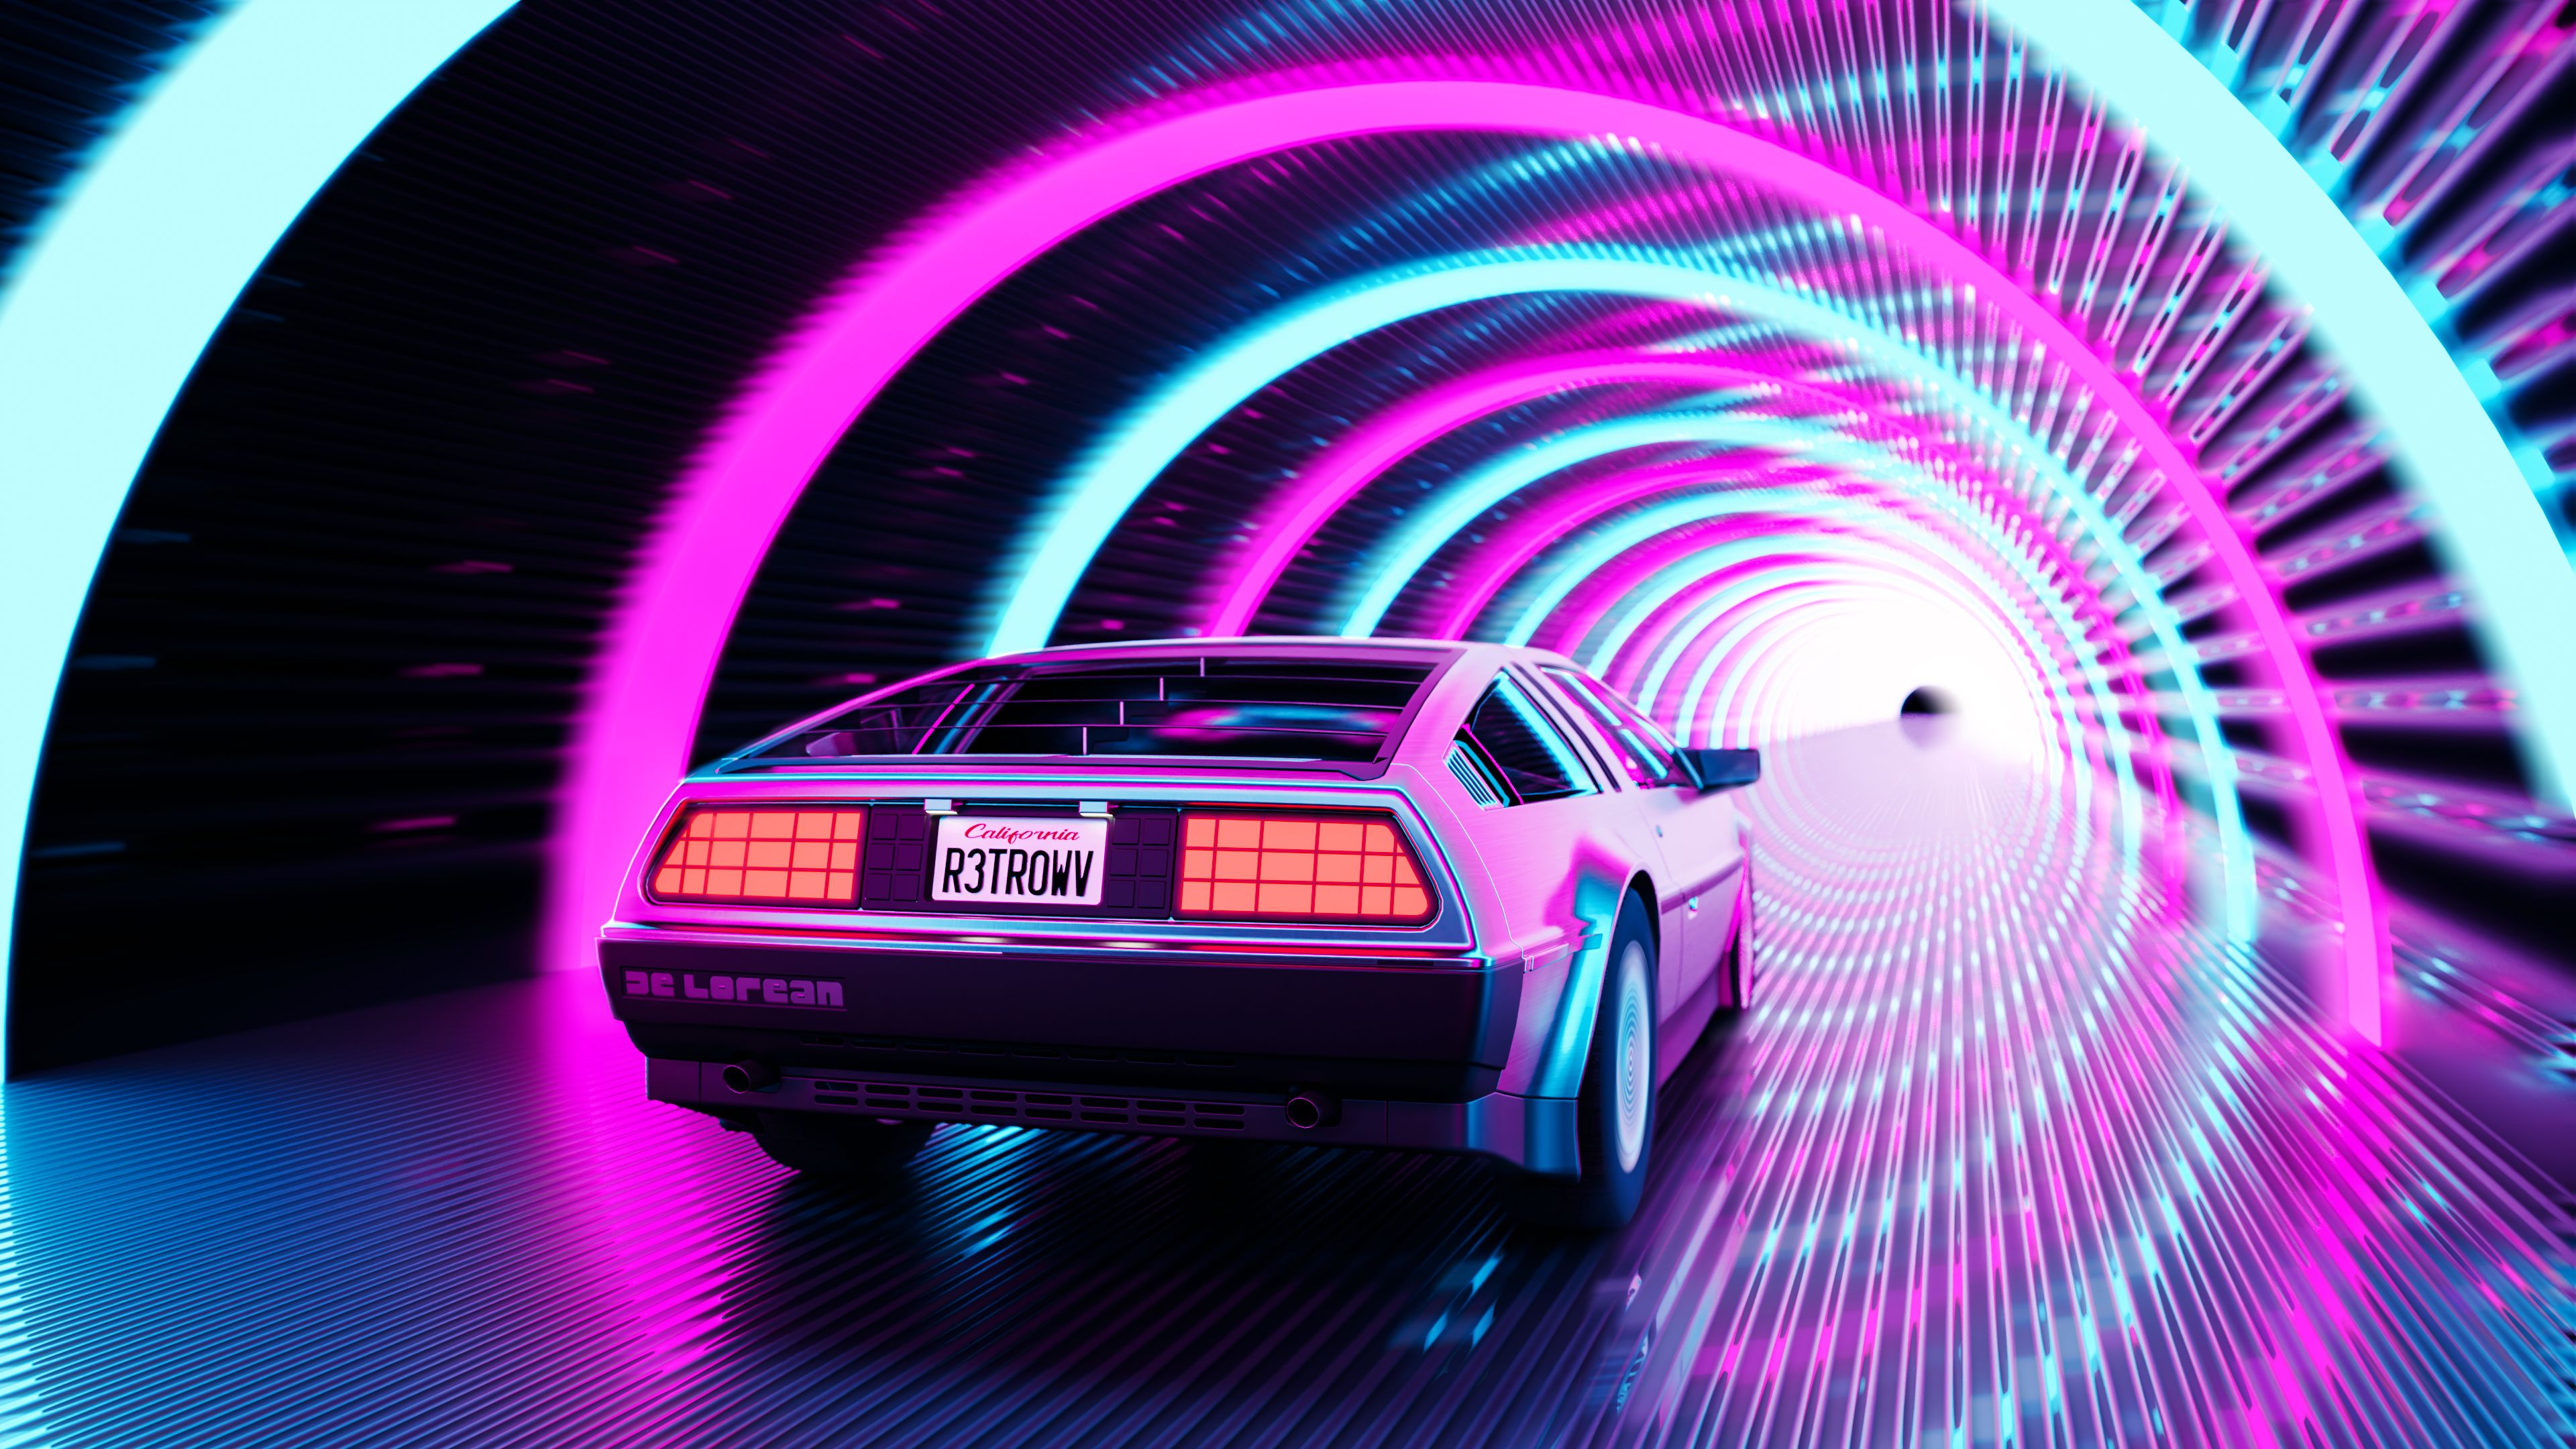 Car Artwork Retrowave Road Tunnel DeLorean DMC DeLorean Wallpaper:3840x2160